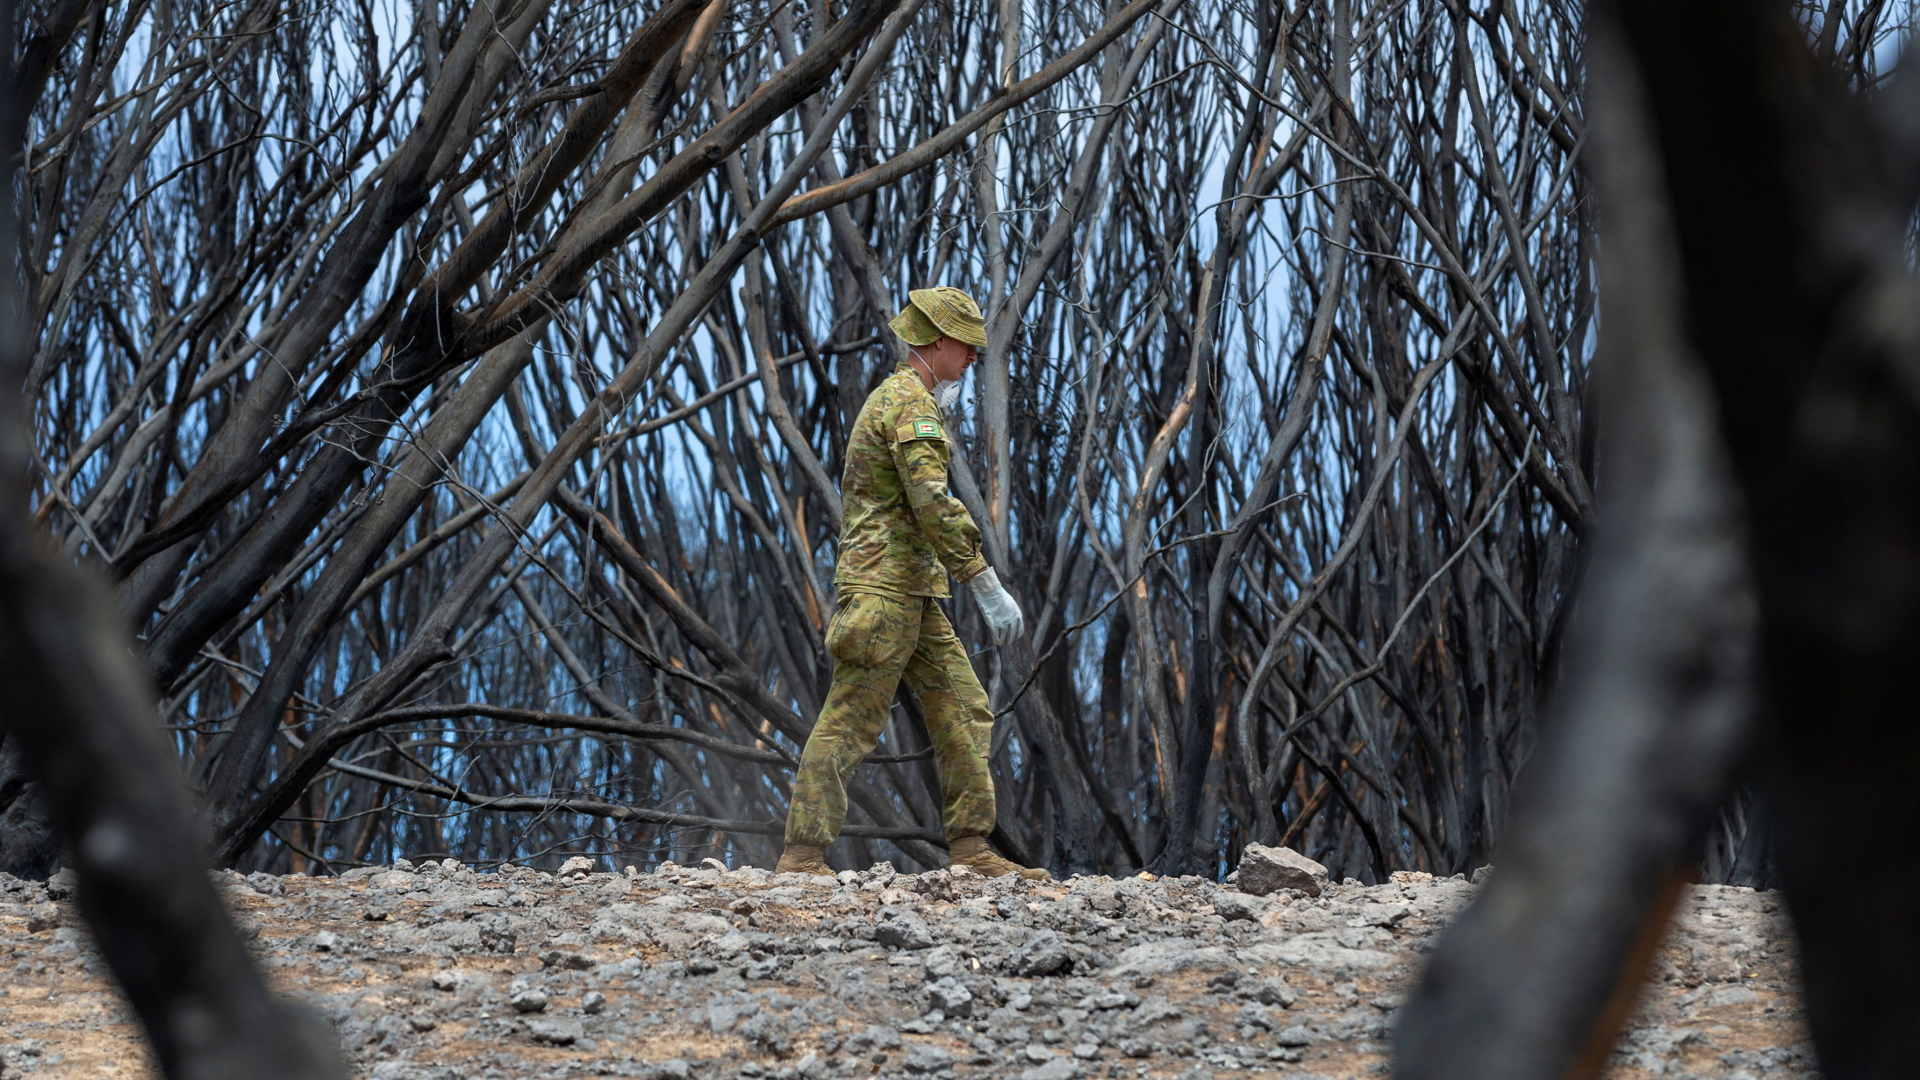 Ein australischer Soldat sucht nach verendeten Tieren. | CPL TRISTAN KENNEDY/FIRST JOINT 